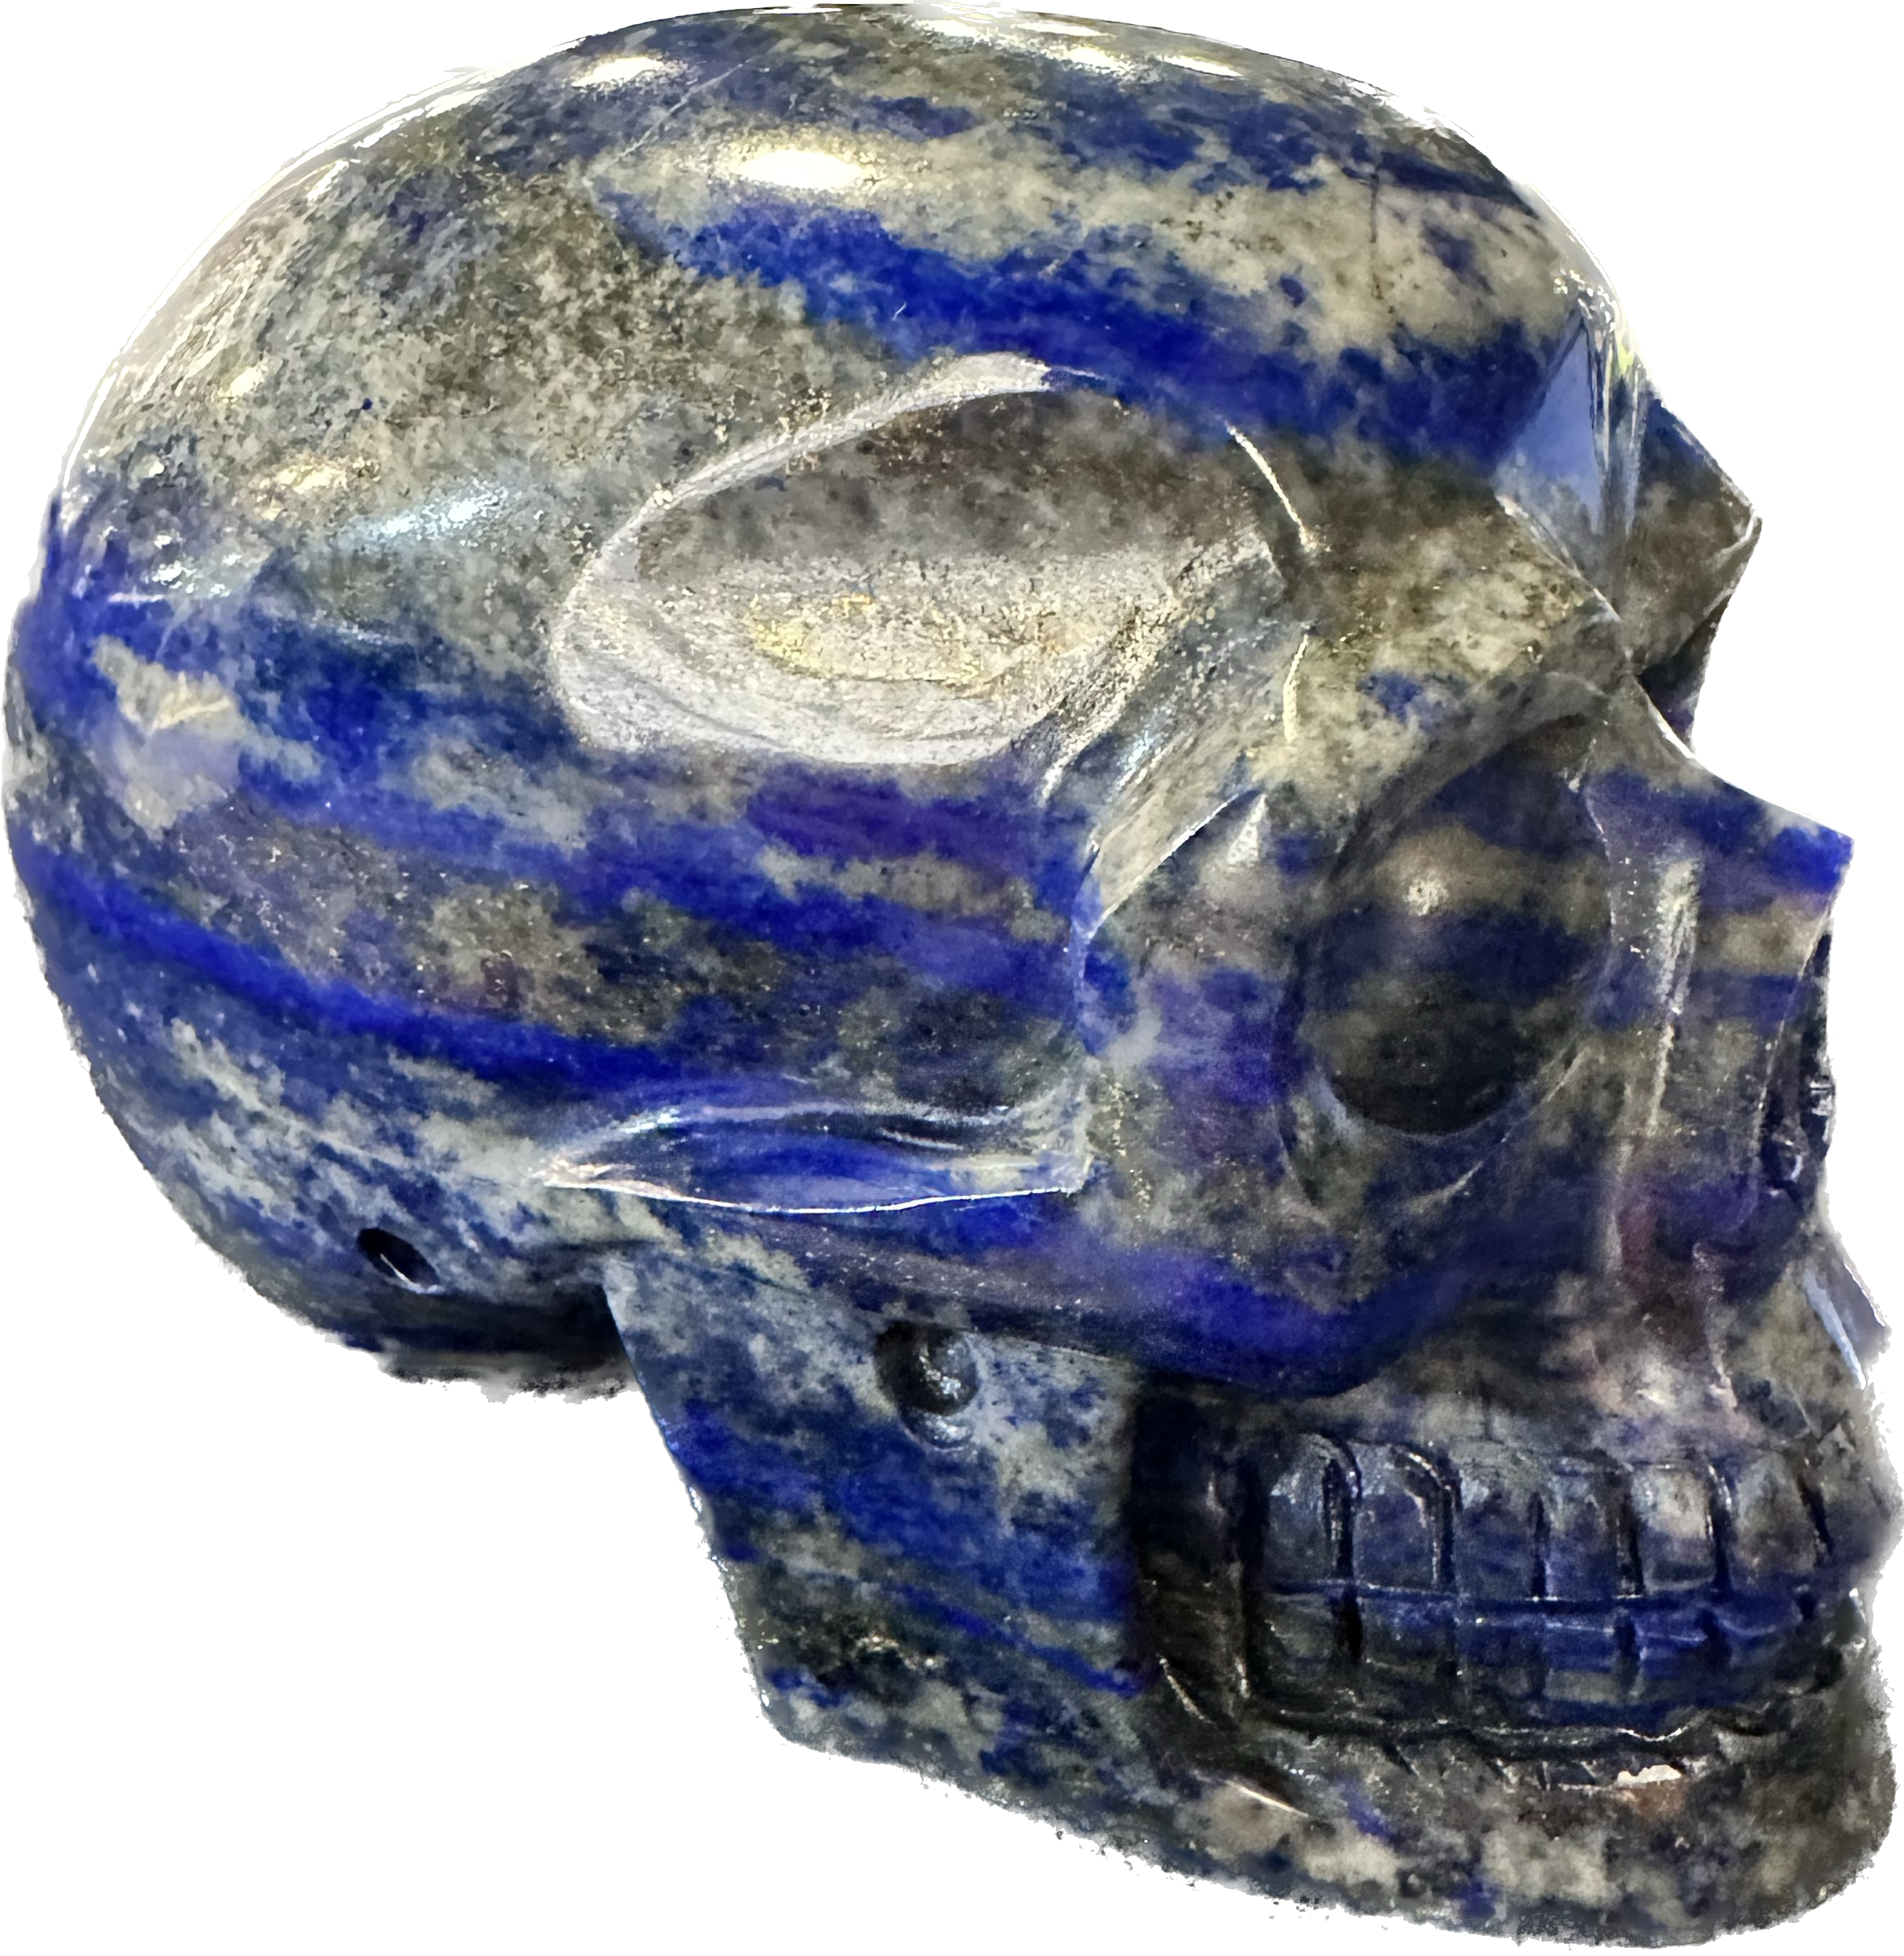 Lapis skull, hand finished Prehistoric Online